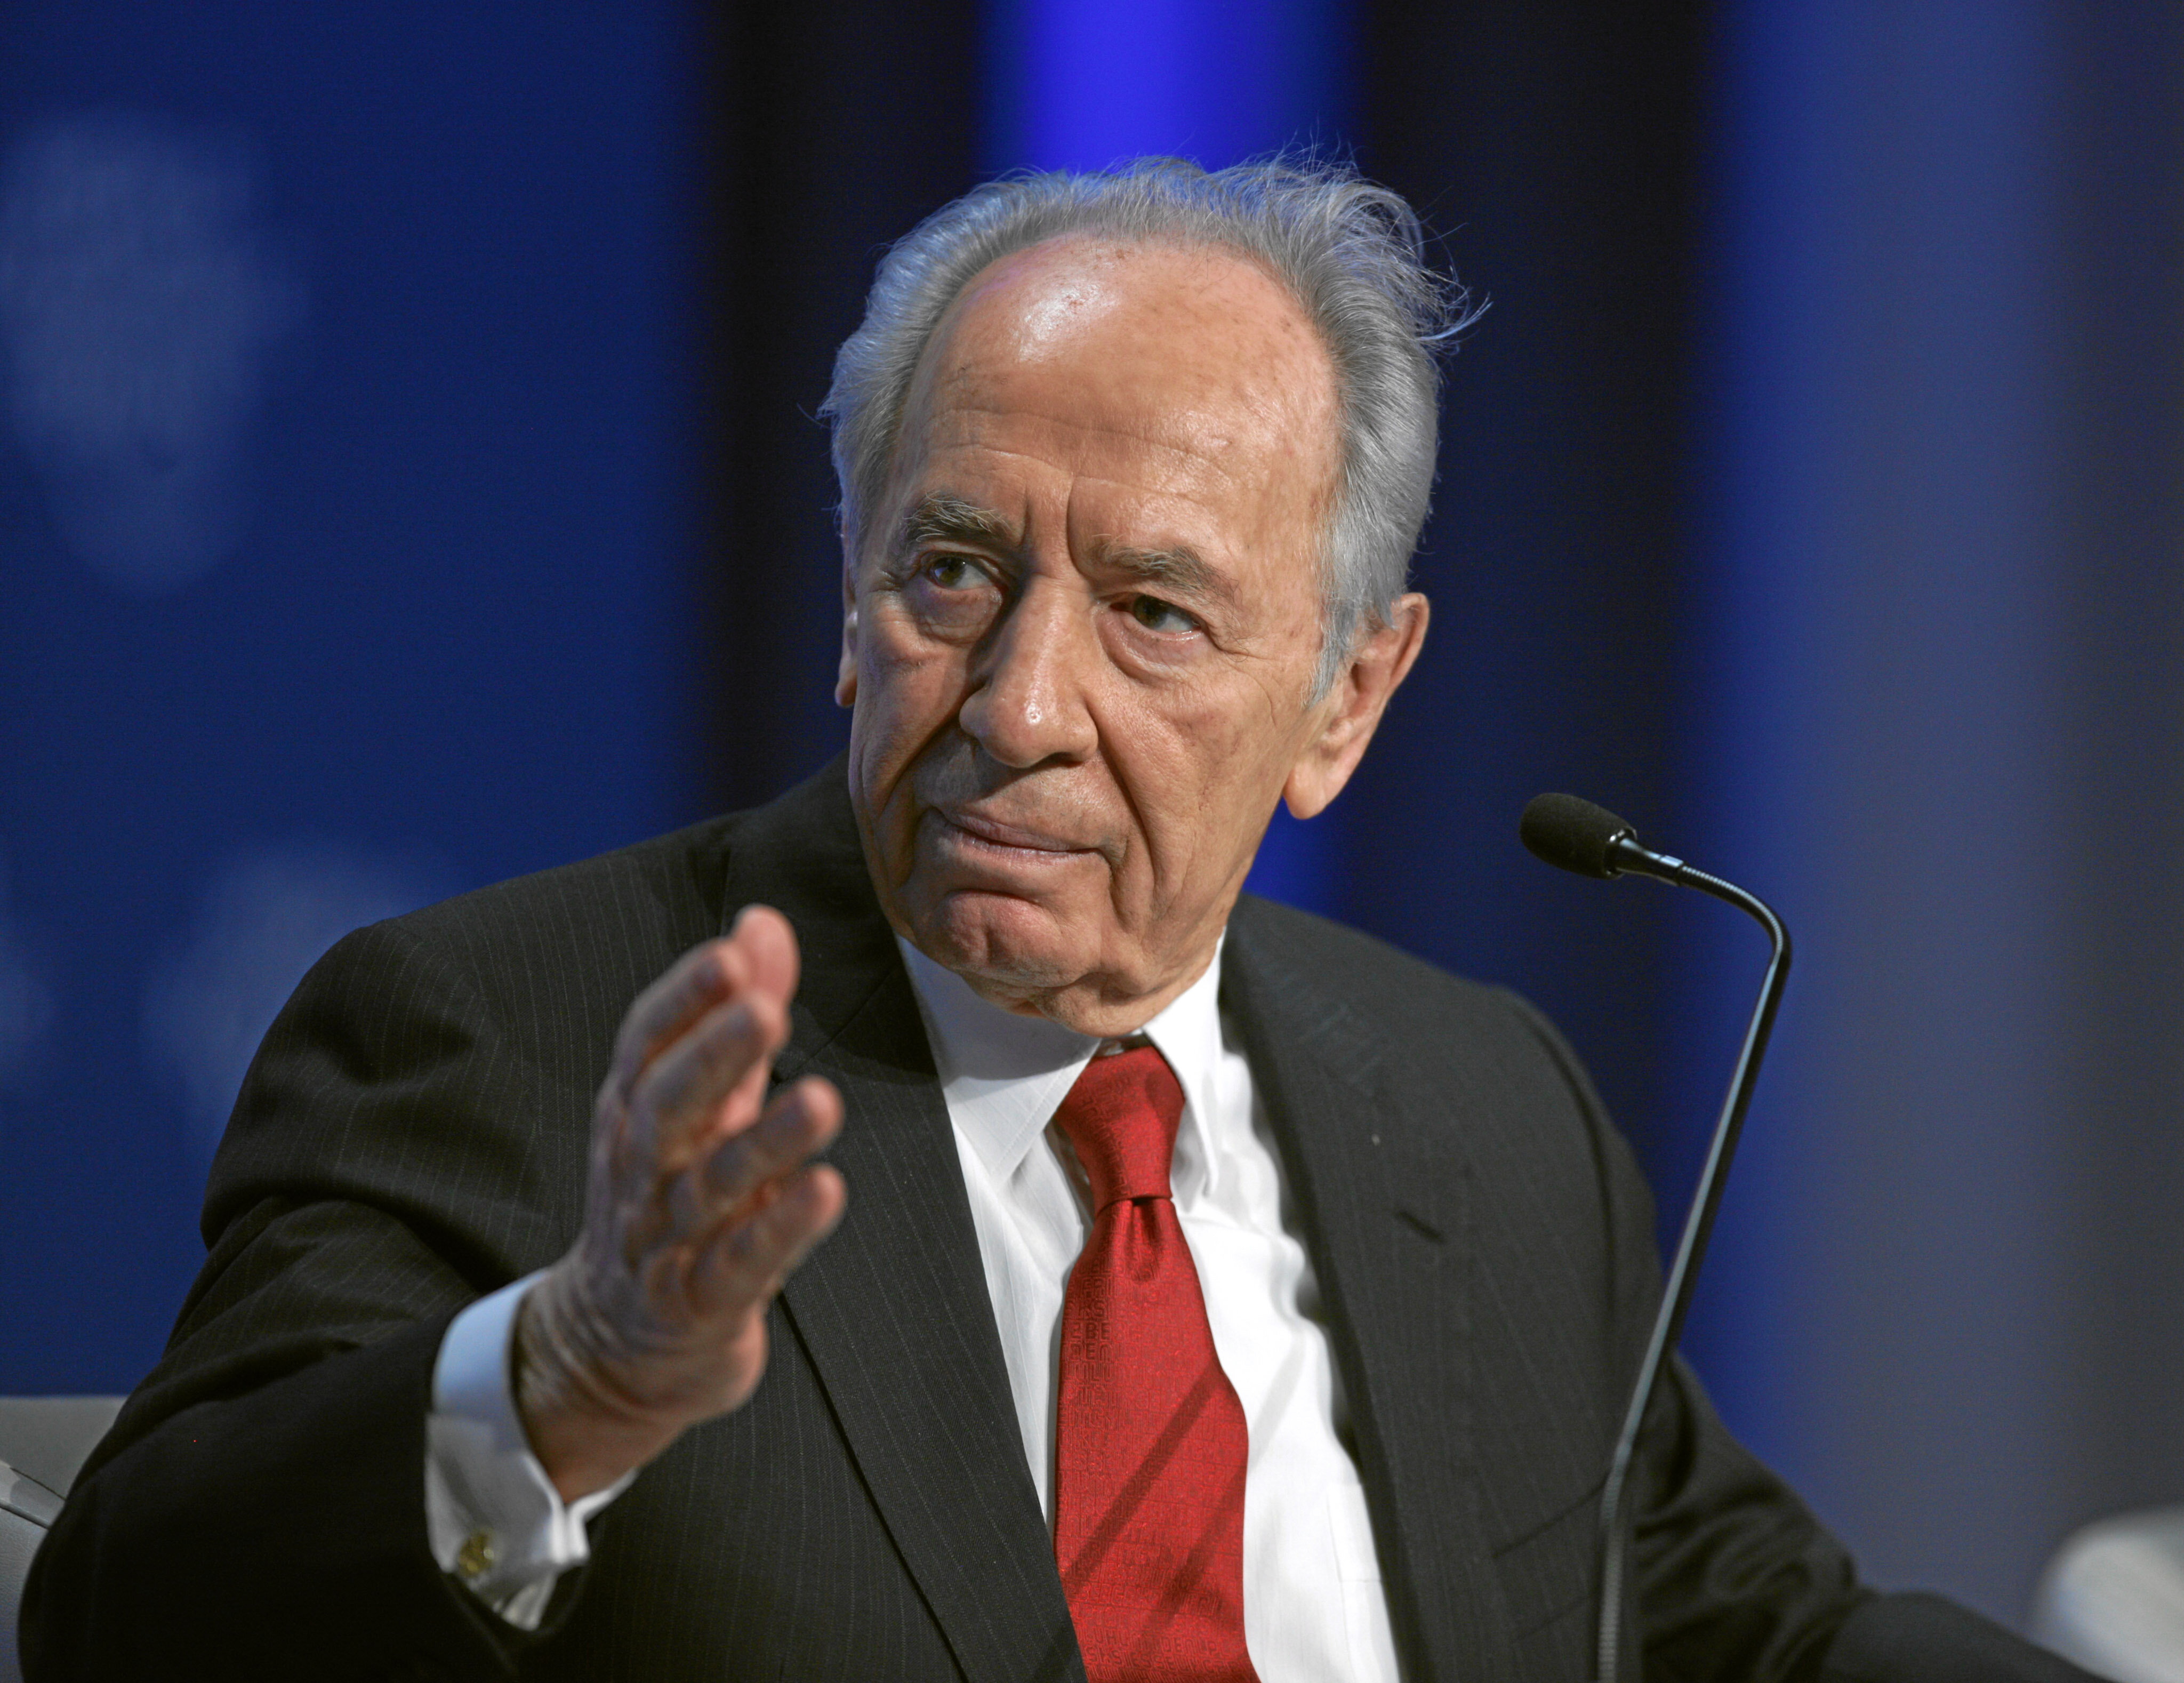 Shimon_Peres_at_2009_WEF.jpg (1.77 MB)